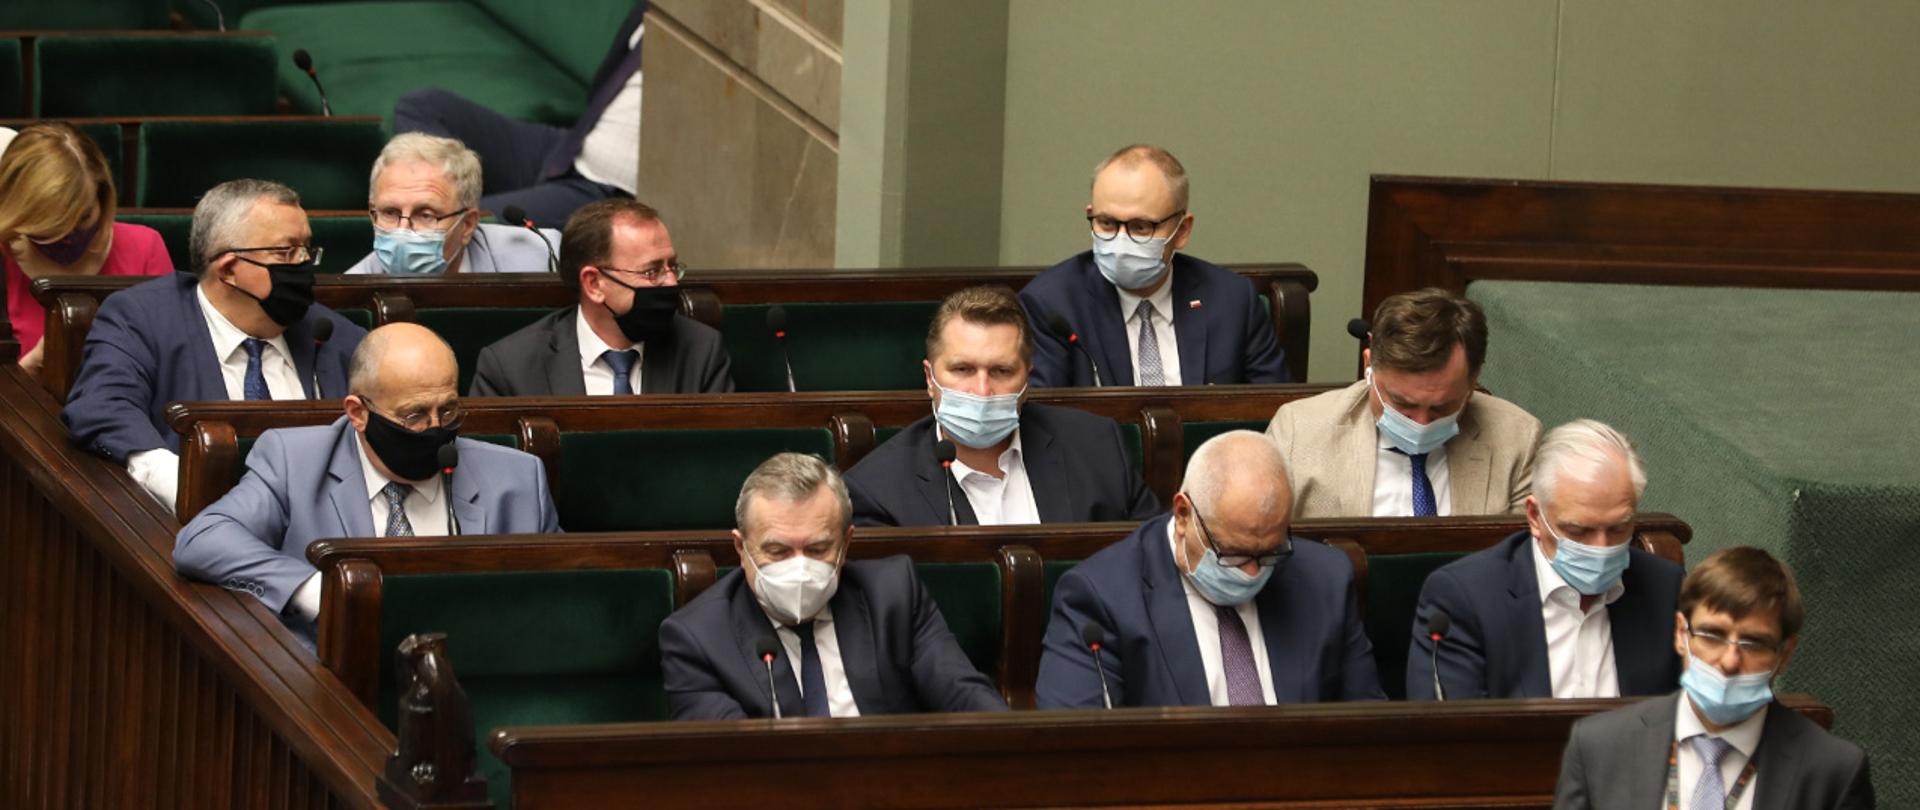 Minister Mariusz Kamiński oraz wiceminister Błażej Poboży siedzący w ławach sejmowych podczas bloku głosowań.